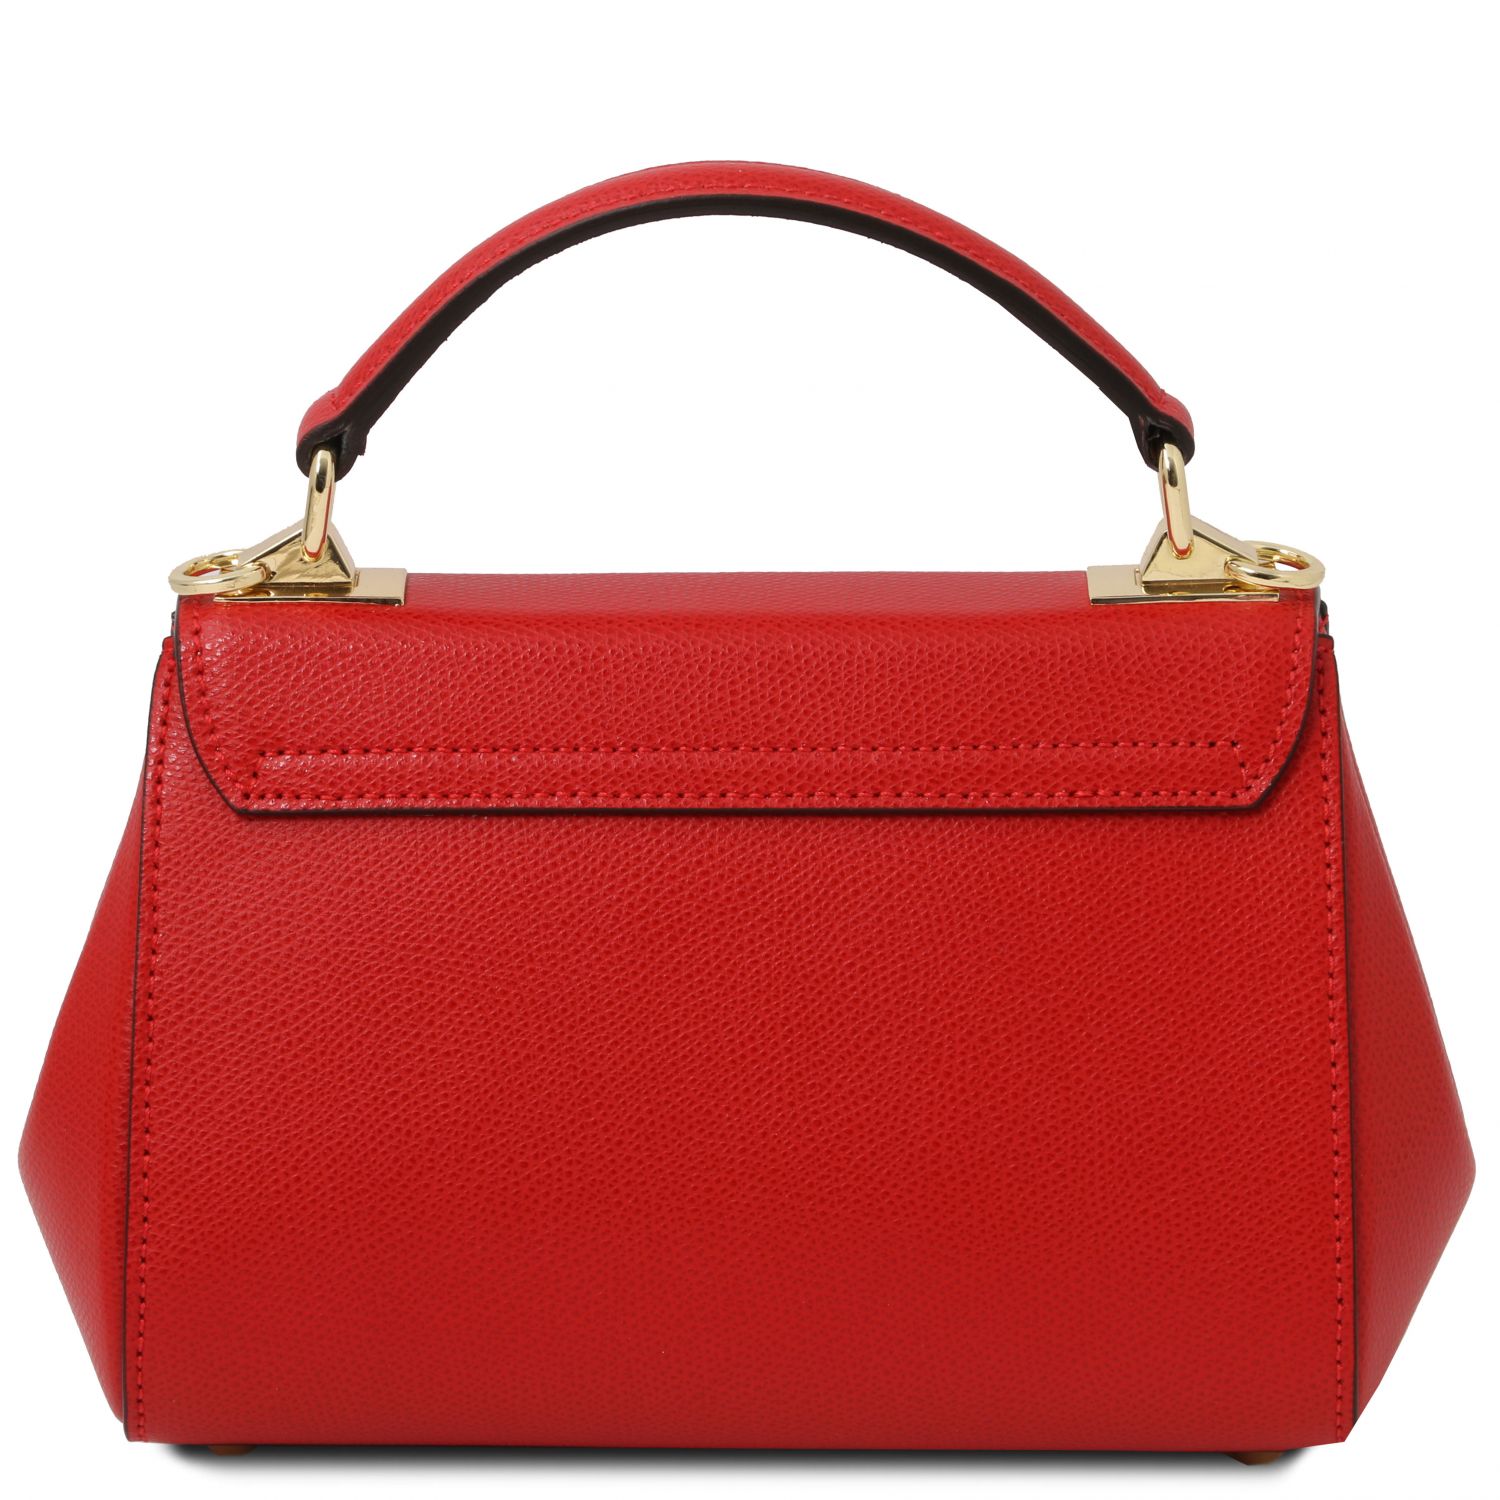 Small Palmellato Leather Handbag - Tarare - Domini Leather